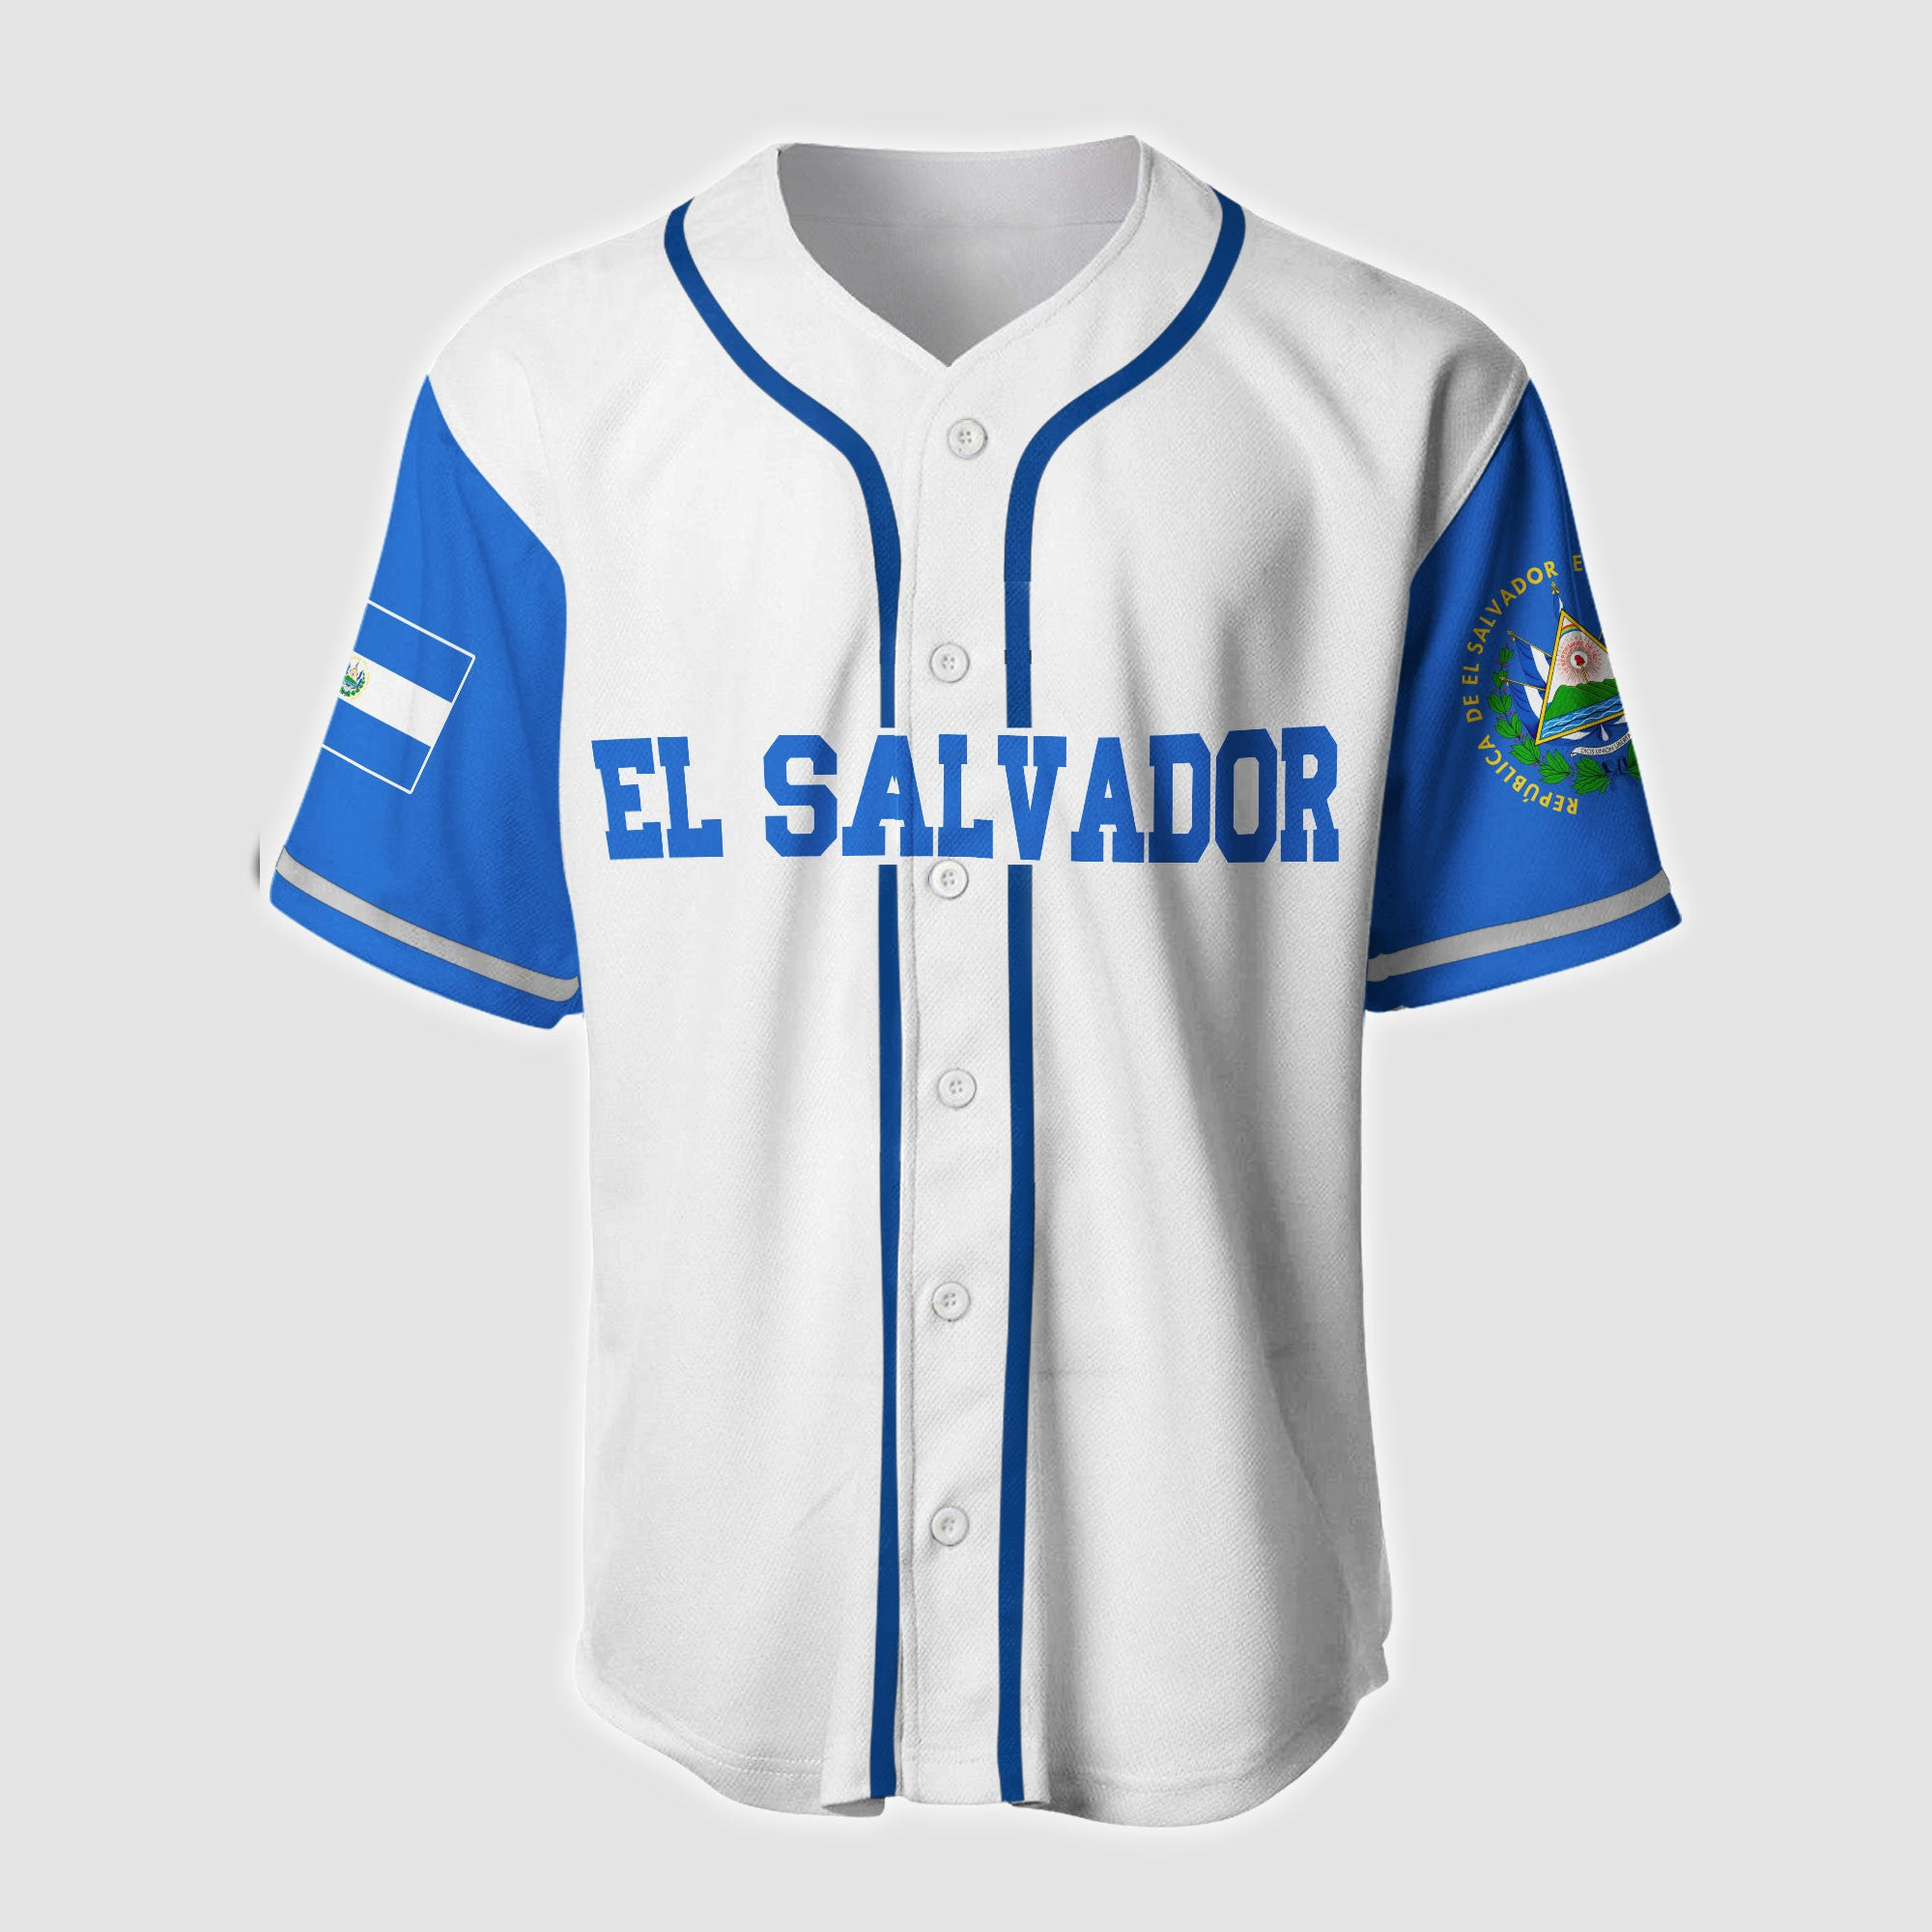 El Salvador Skull Baseball Jersey